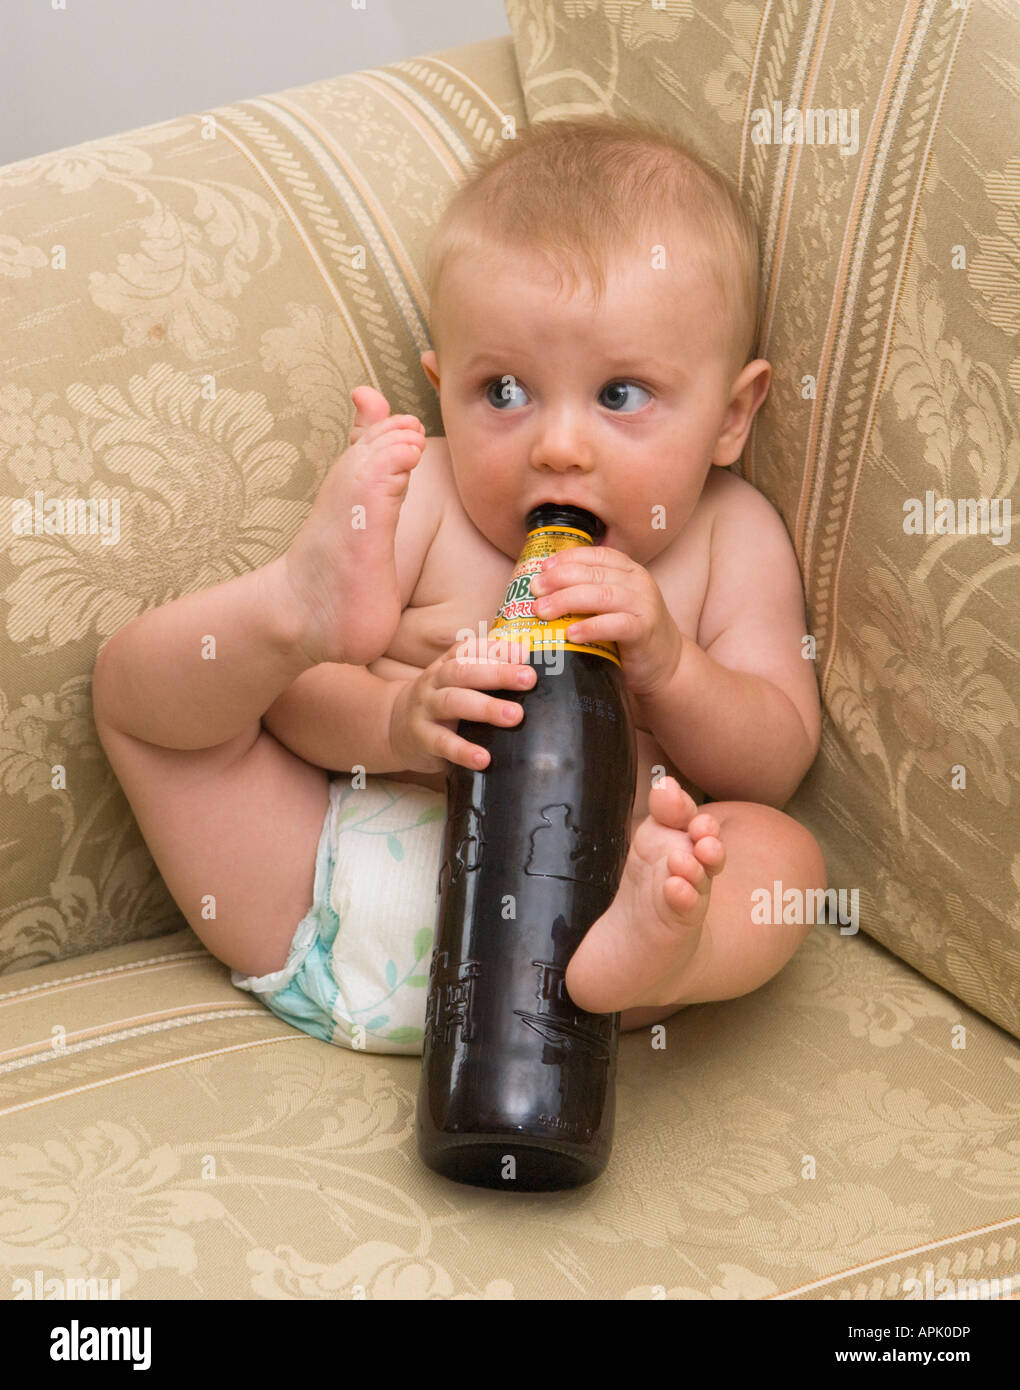 Fünf Monate altes Baby saugen auf Bierflasche Stockfoto